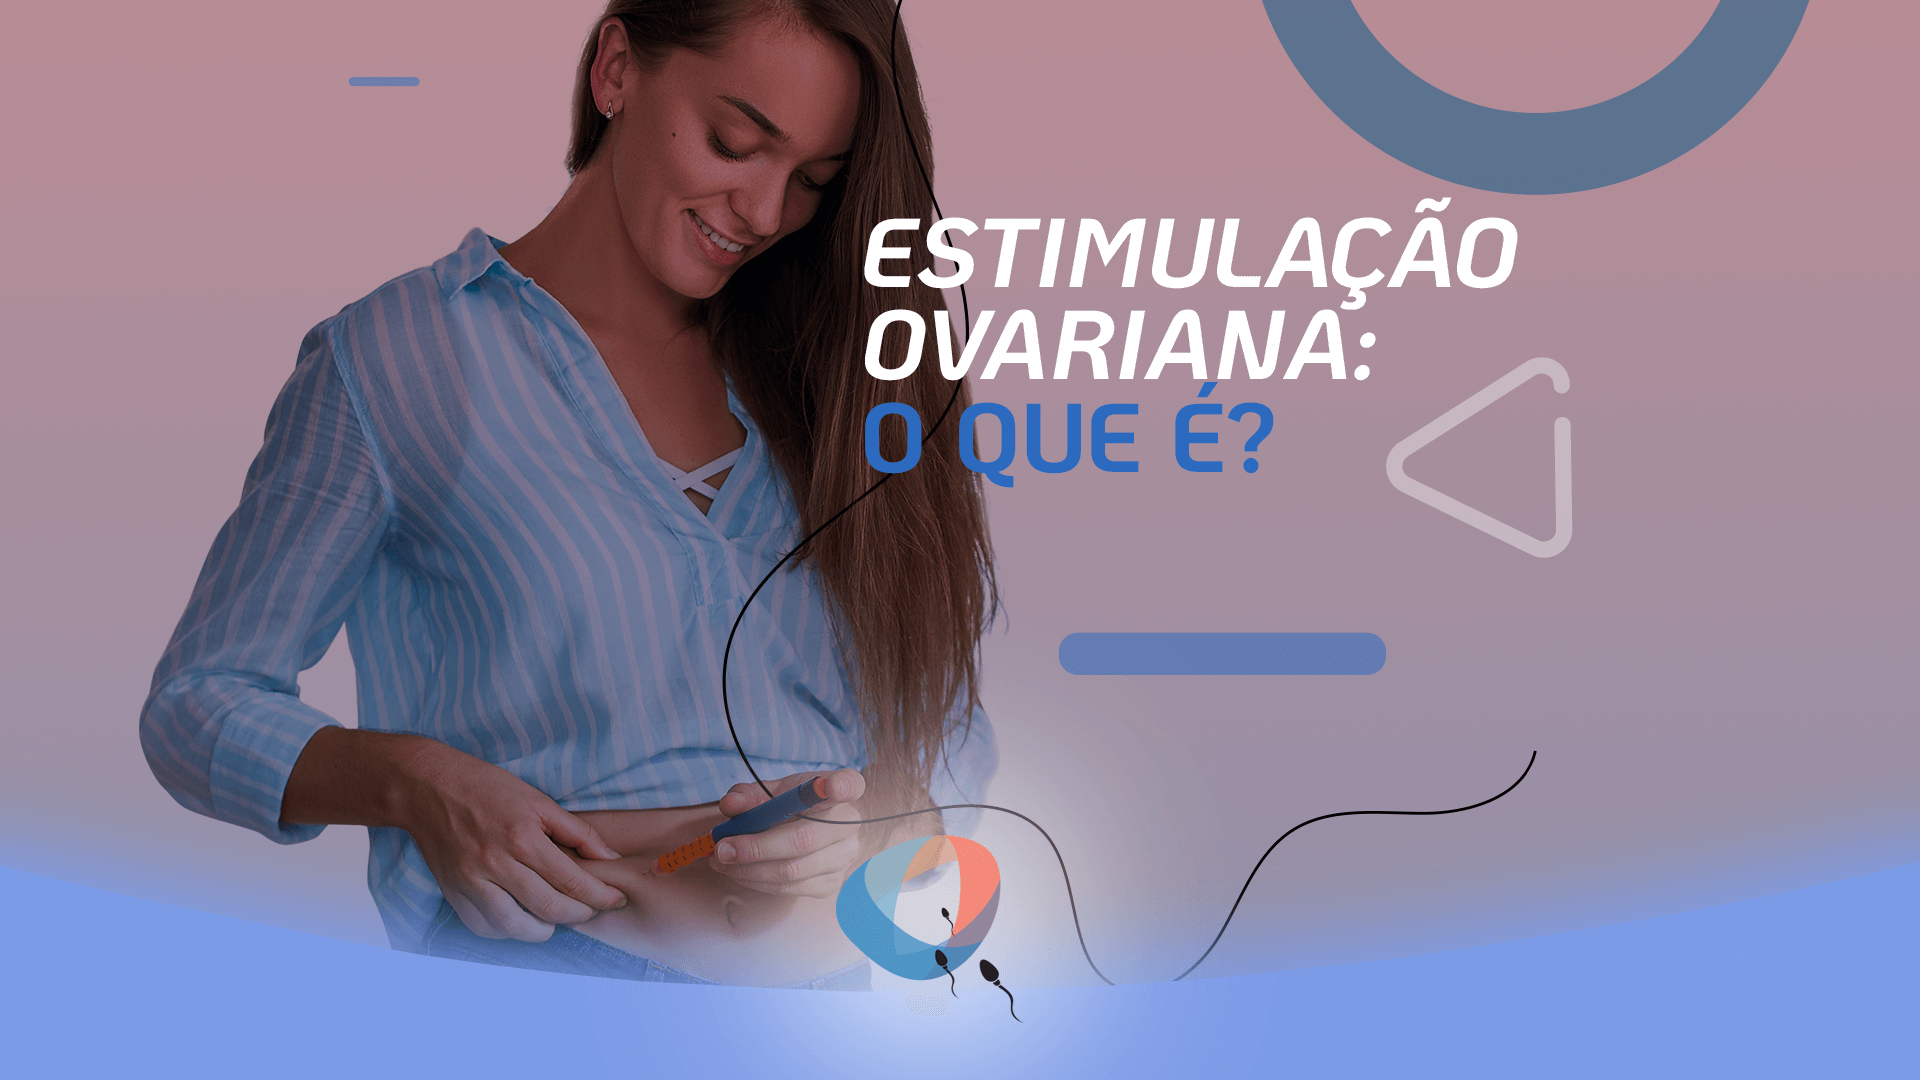 Estimulação ovariana: o que é?